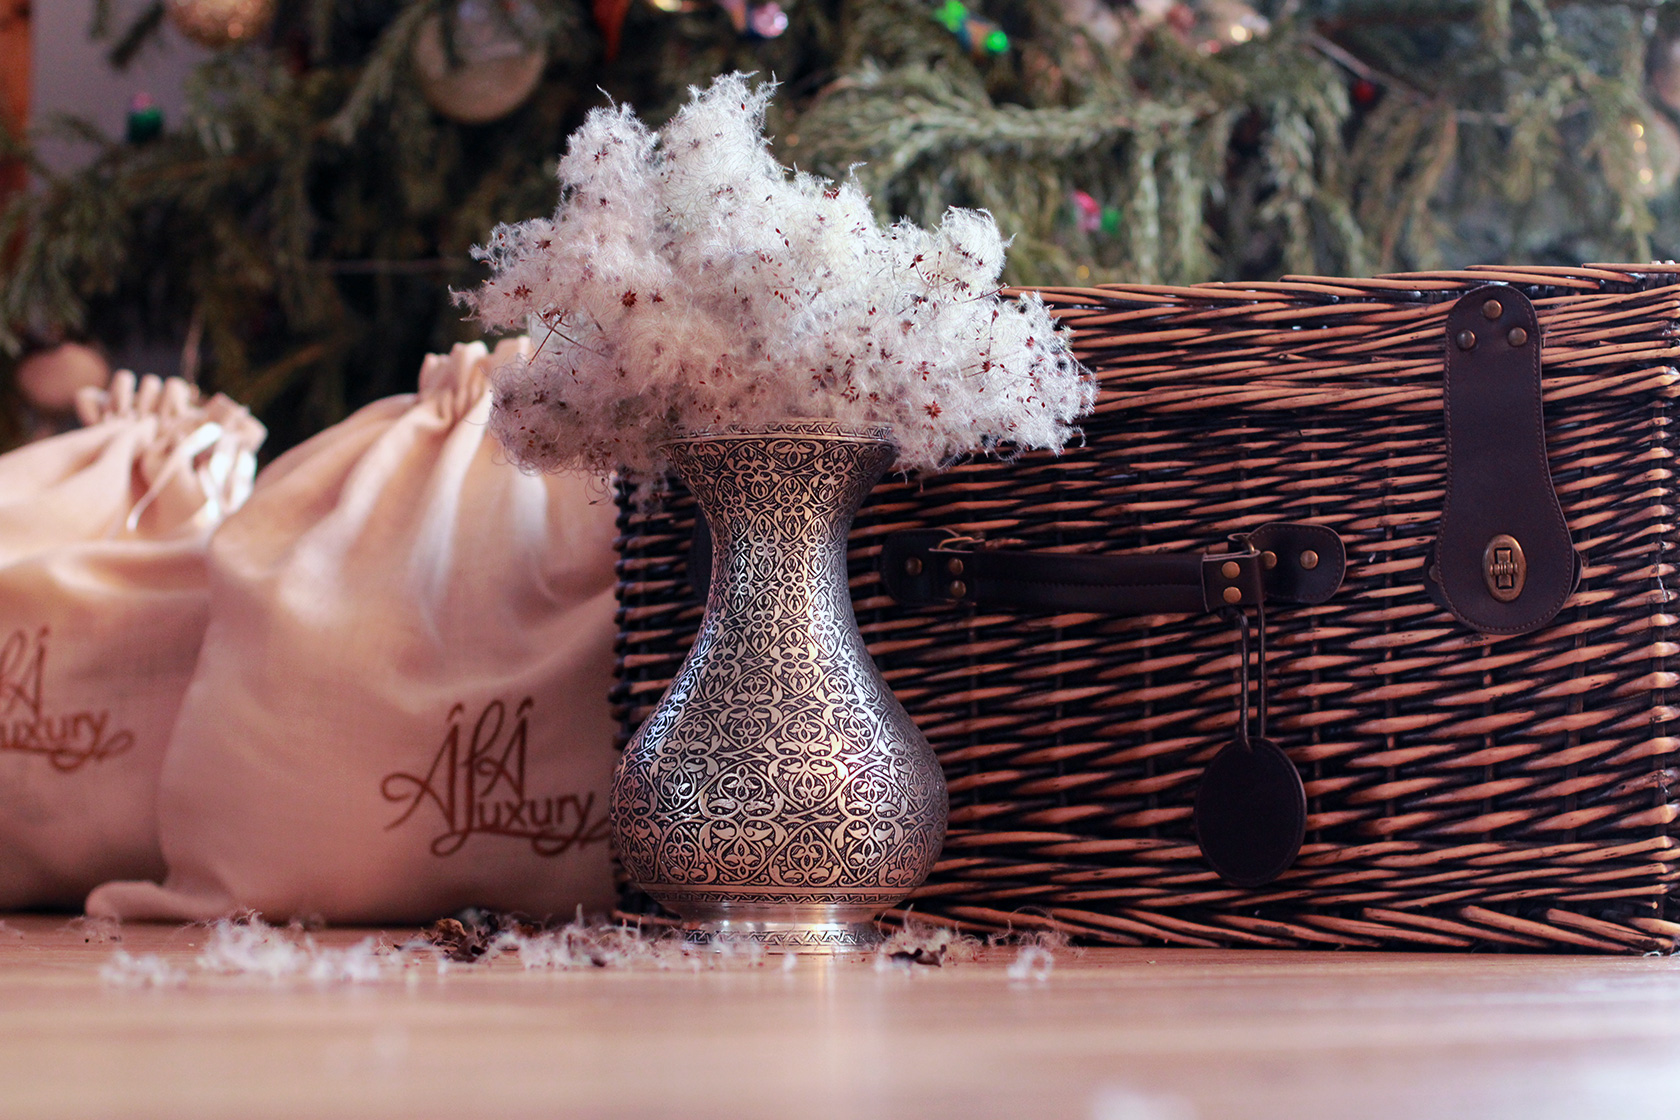 Engraved Copper Vase